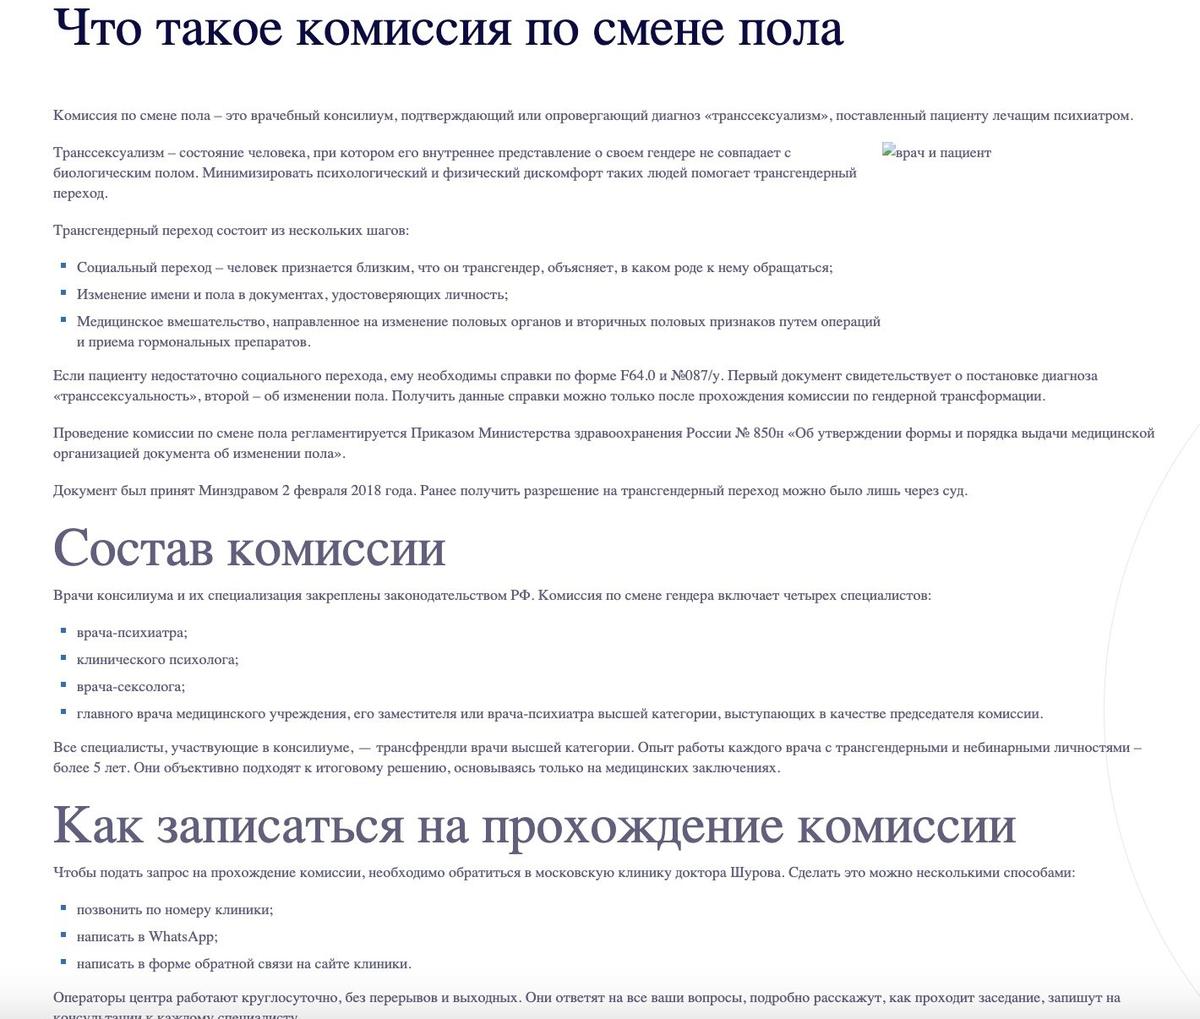 Скрин страницы  сайта  Психиатрической клиники Василия Шурова. Две недели назад на сайте была доступна информация о комиссии по смене пола, сейчас эта страница заблокирована.